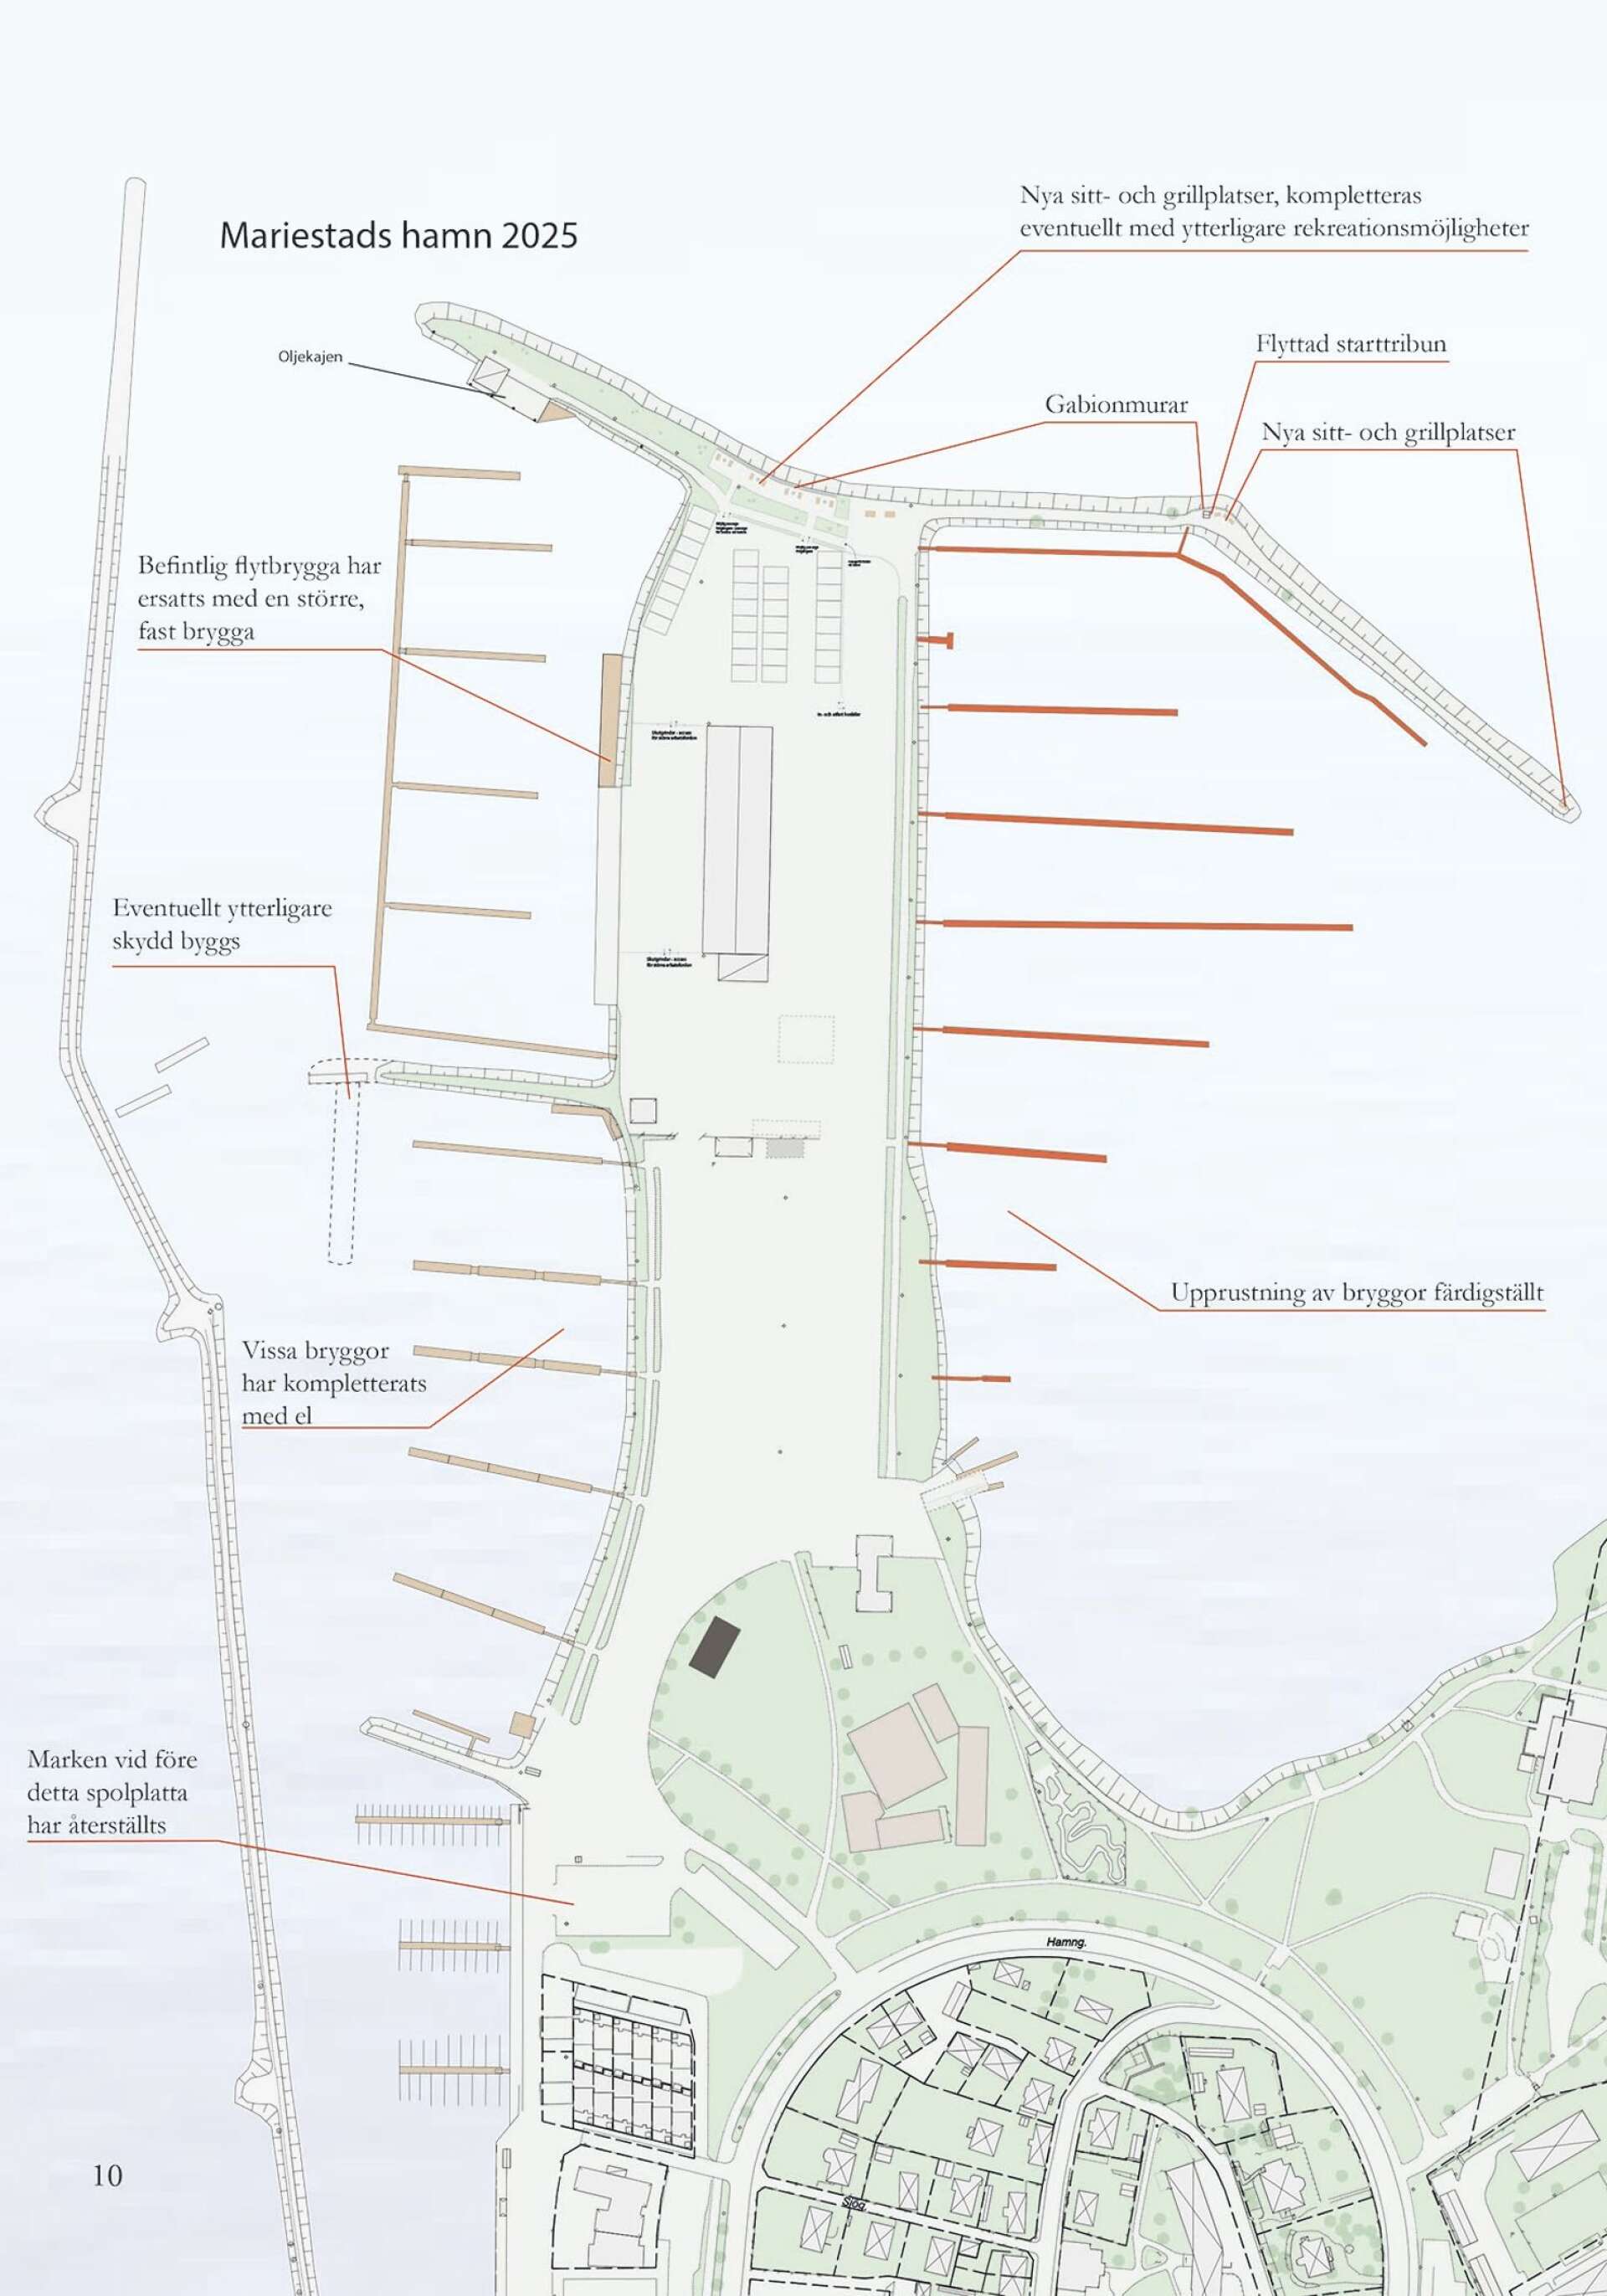 Så här tänker Mariestads kommun att yttre hamnen ska ha utvecklats till år 2025.